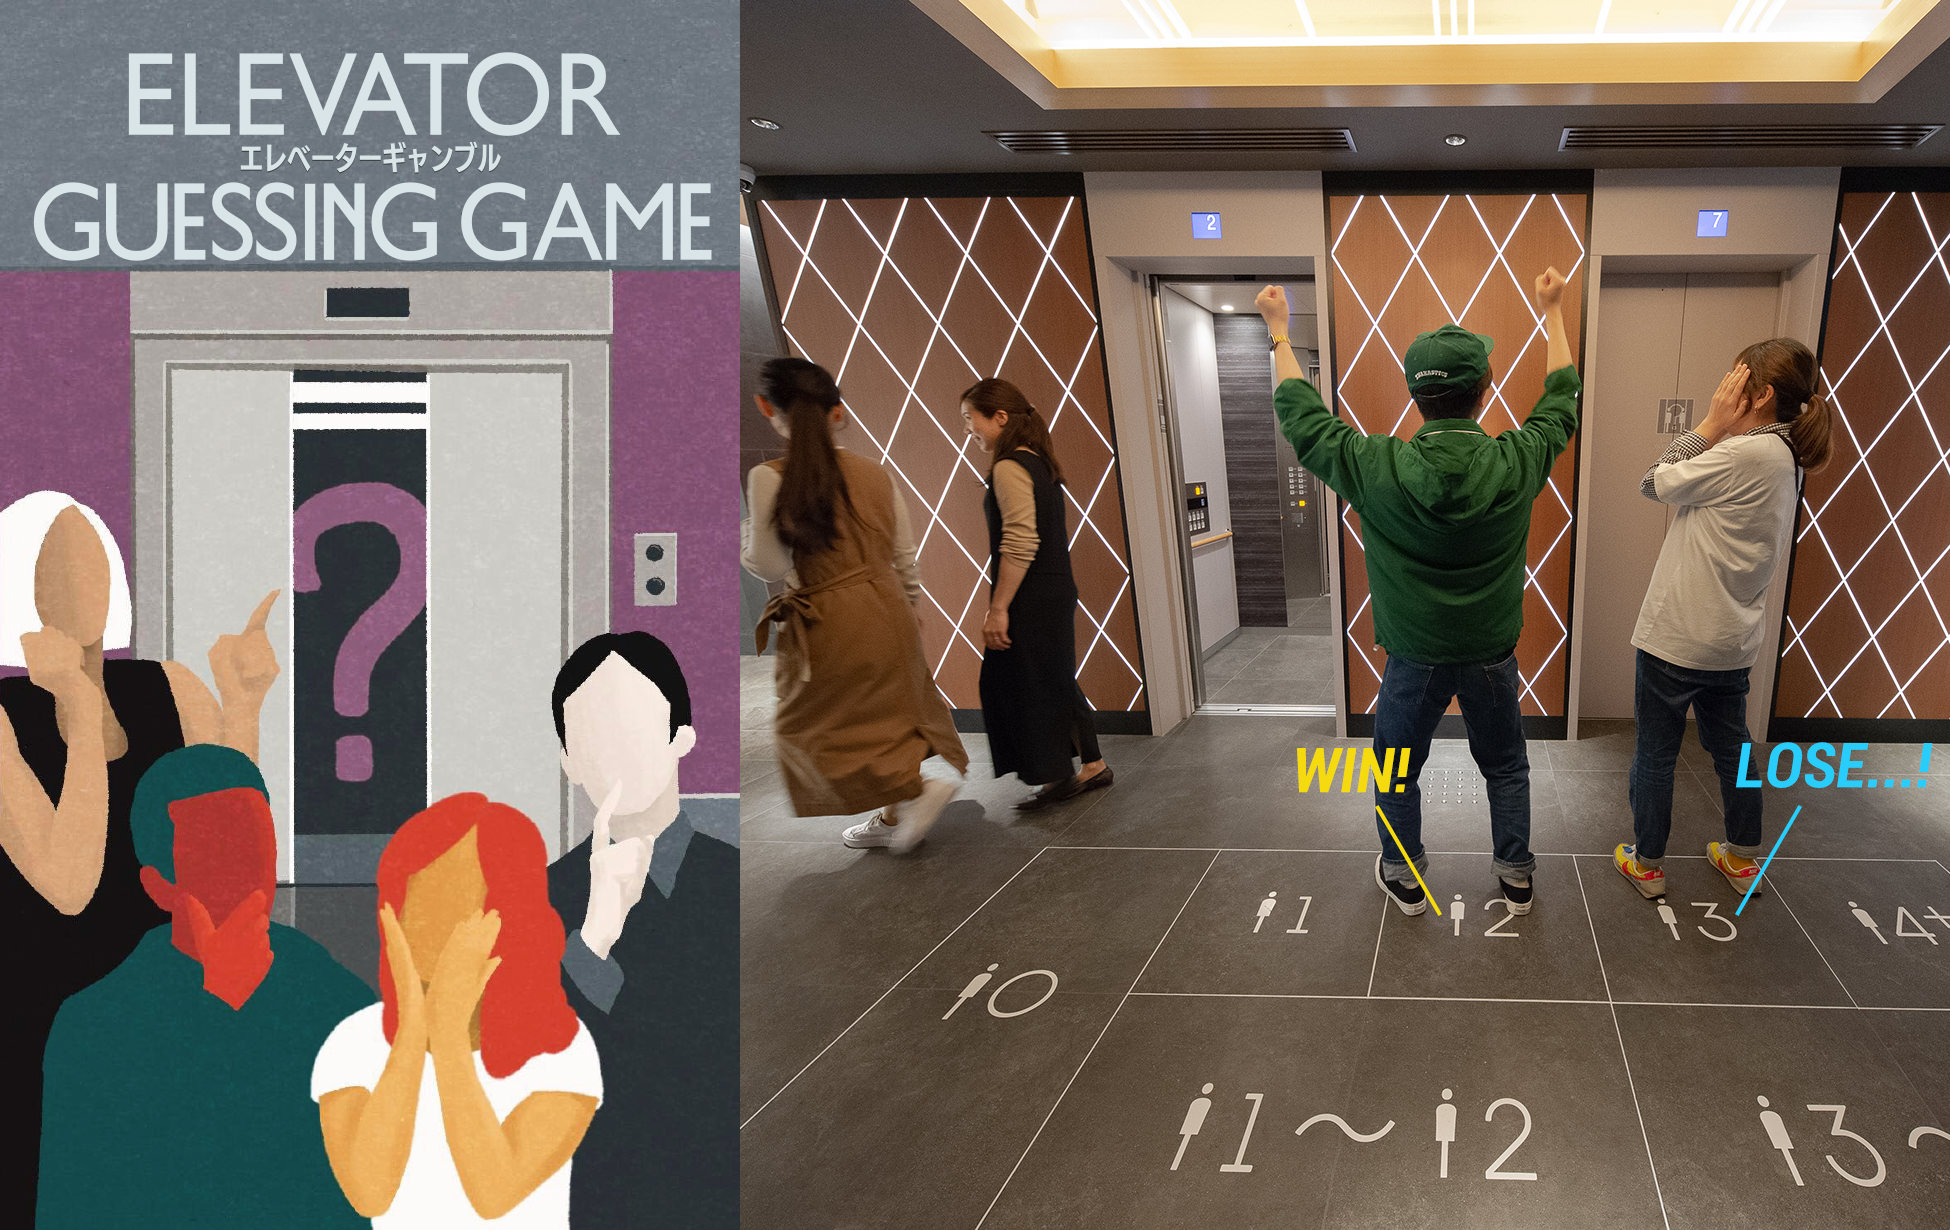 エレベーターの待ち時間も
ゲームに！